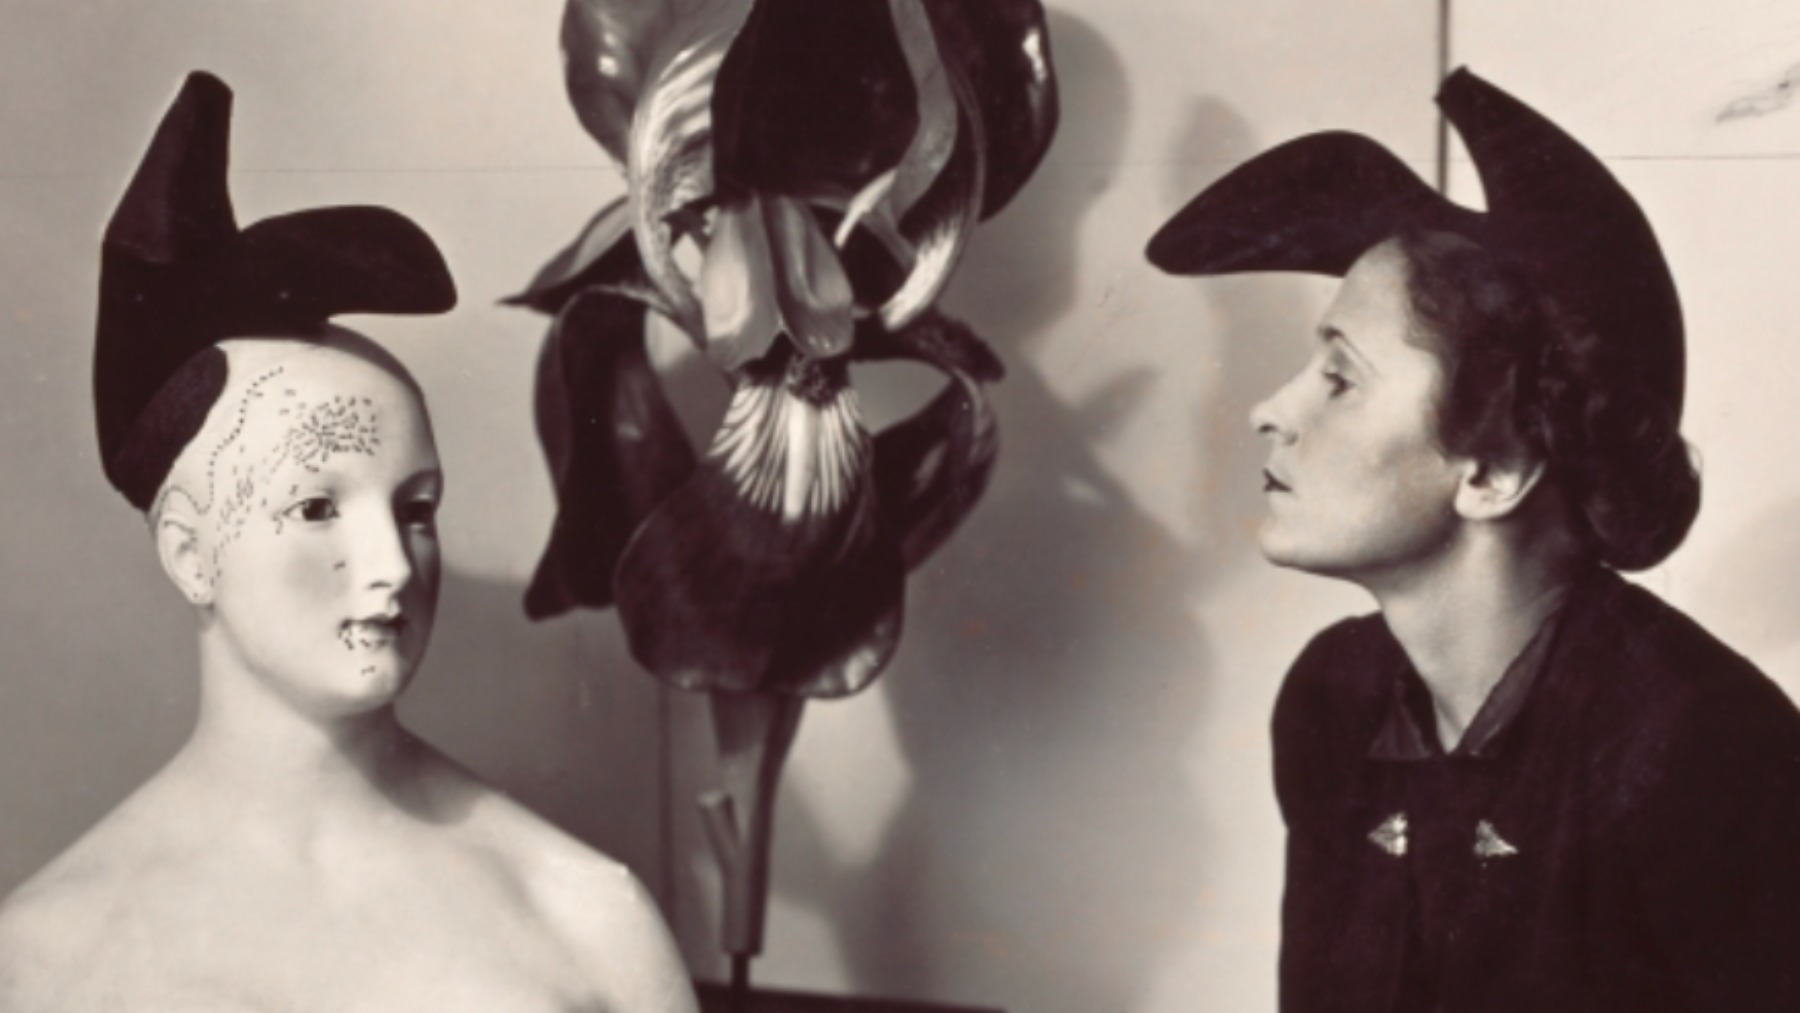 Visitamos la exposición de Elsa Schiaparelli, la diseñadora que convirtió la moda en arte